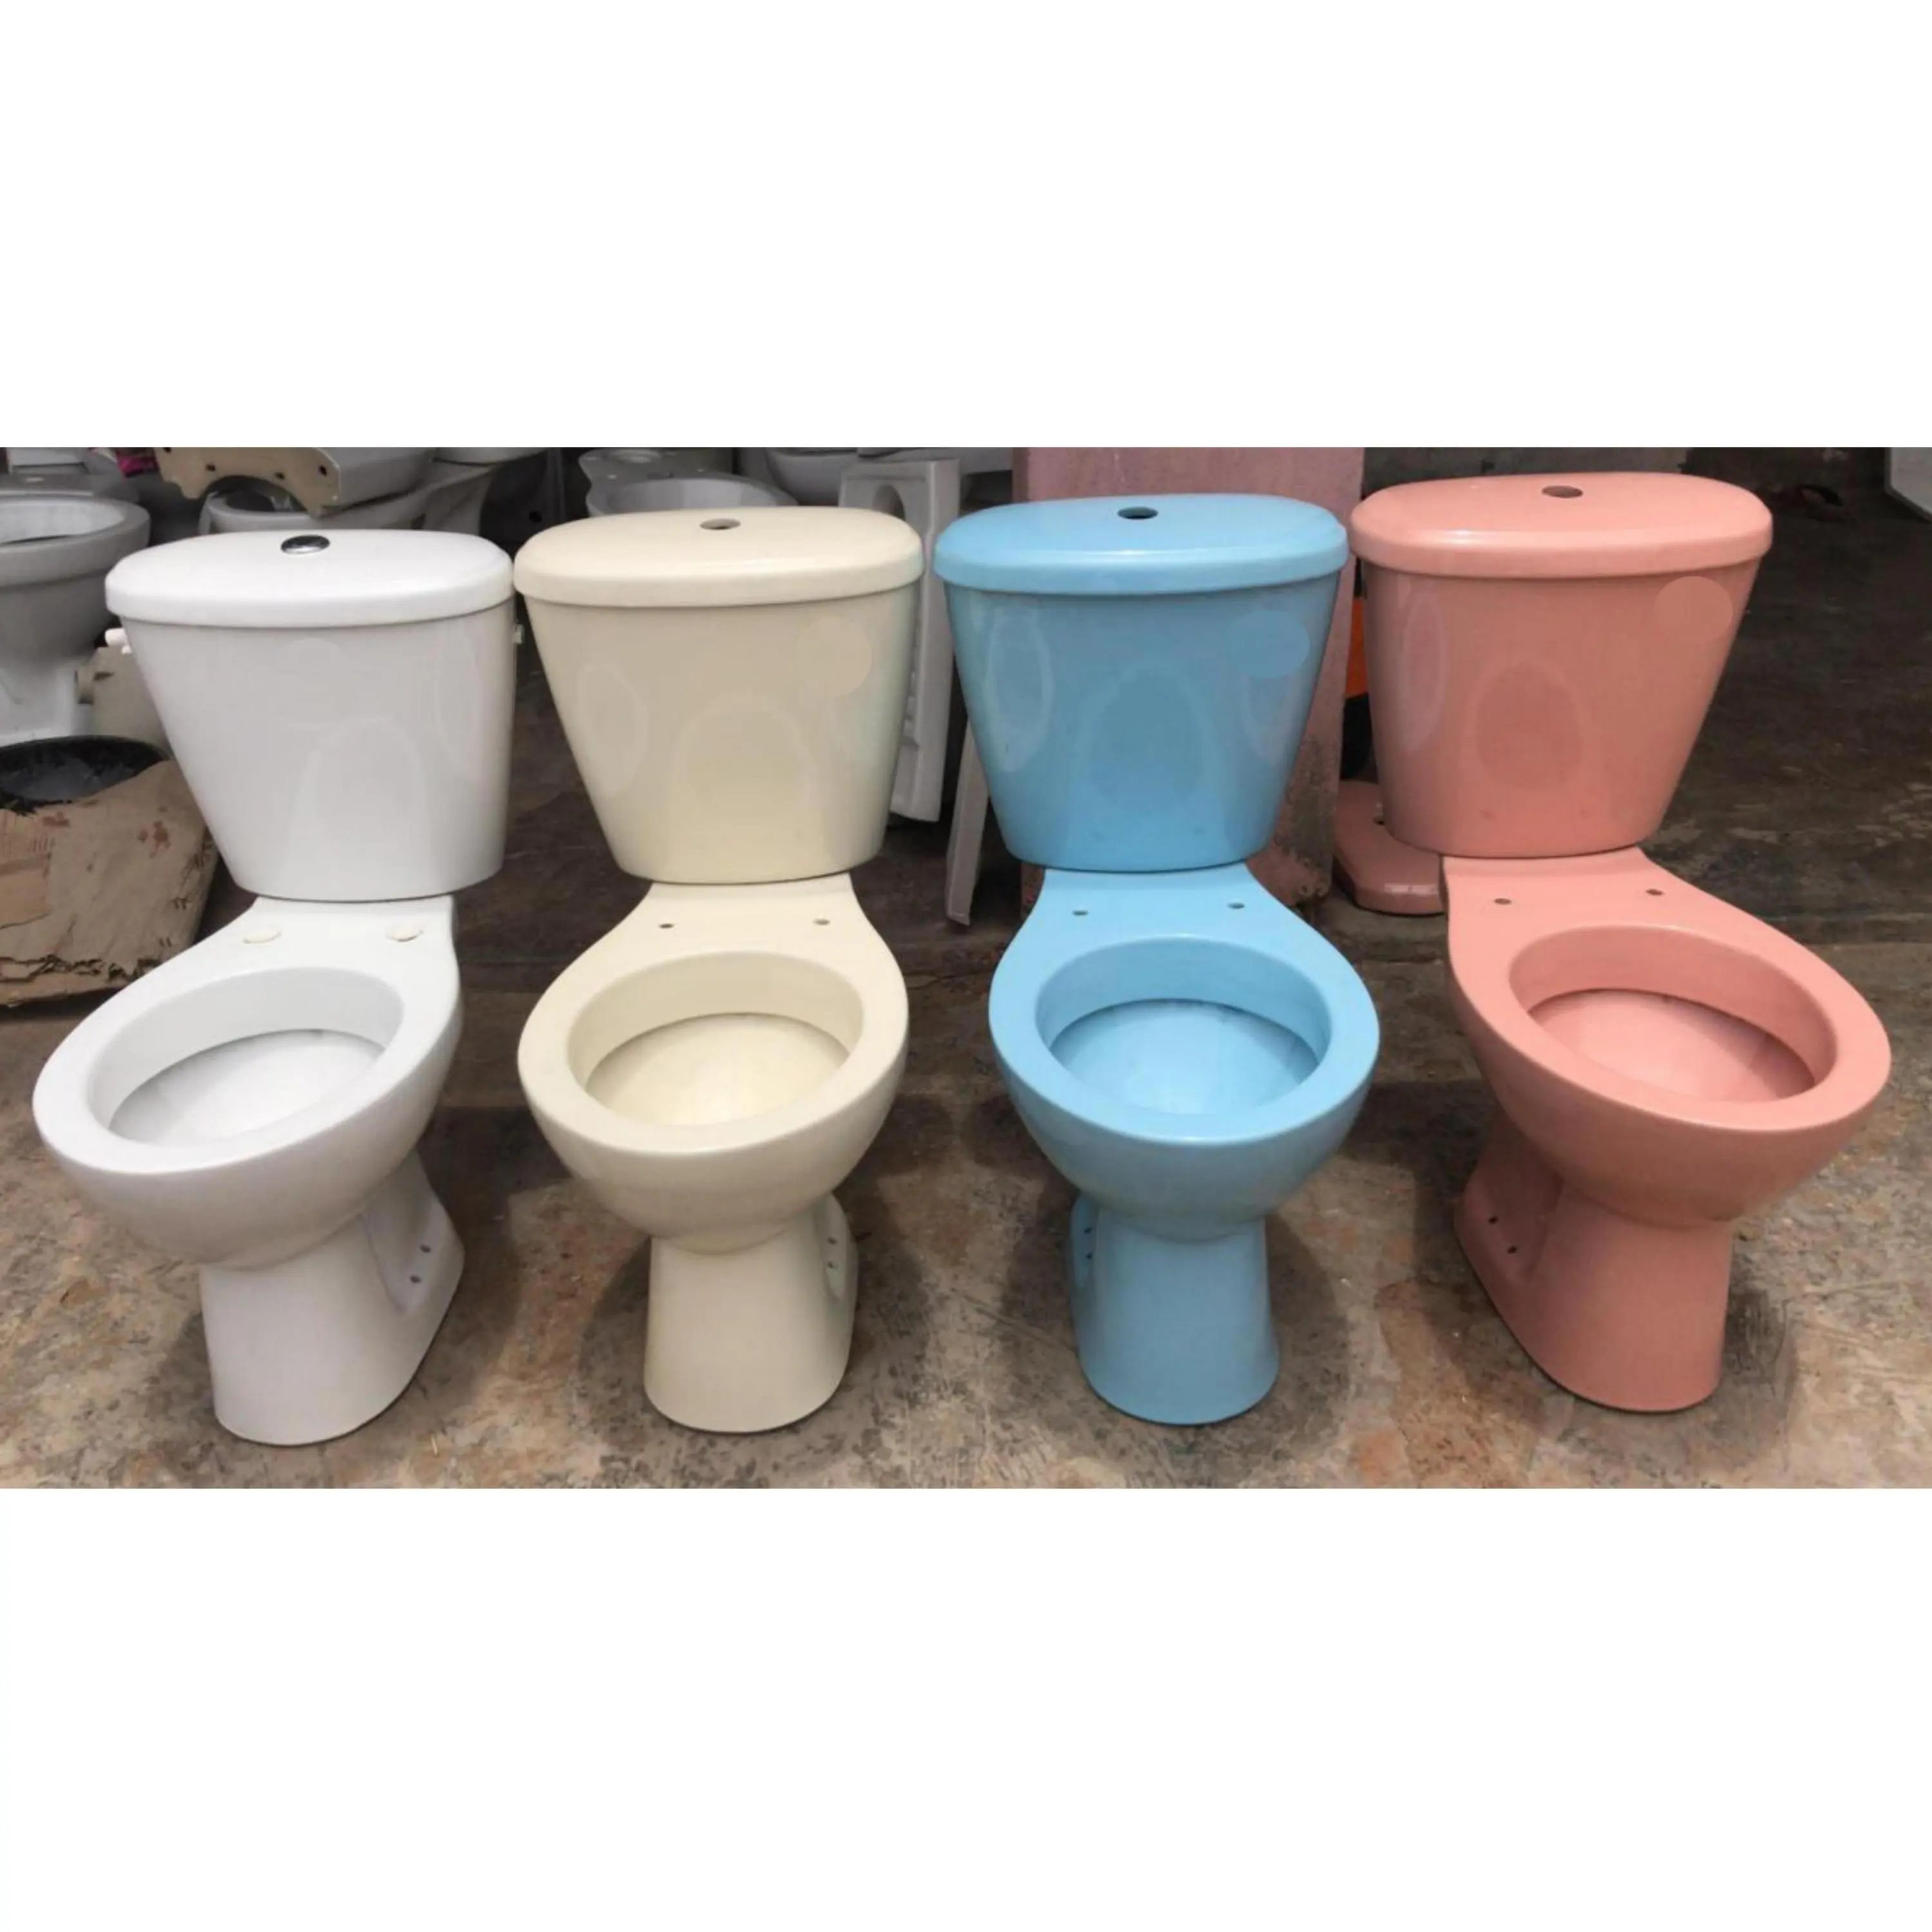 सेनेटरी माल आइवरी रंग डिजाइनर दो टुकड़ा पानी कोठरी कमोड शौचालय सीट भारत से 1st ग्रेड प्रीमियम गुणवत्ता सबसे कम कीमत